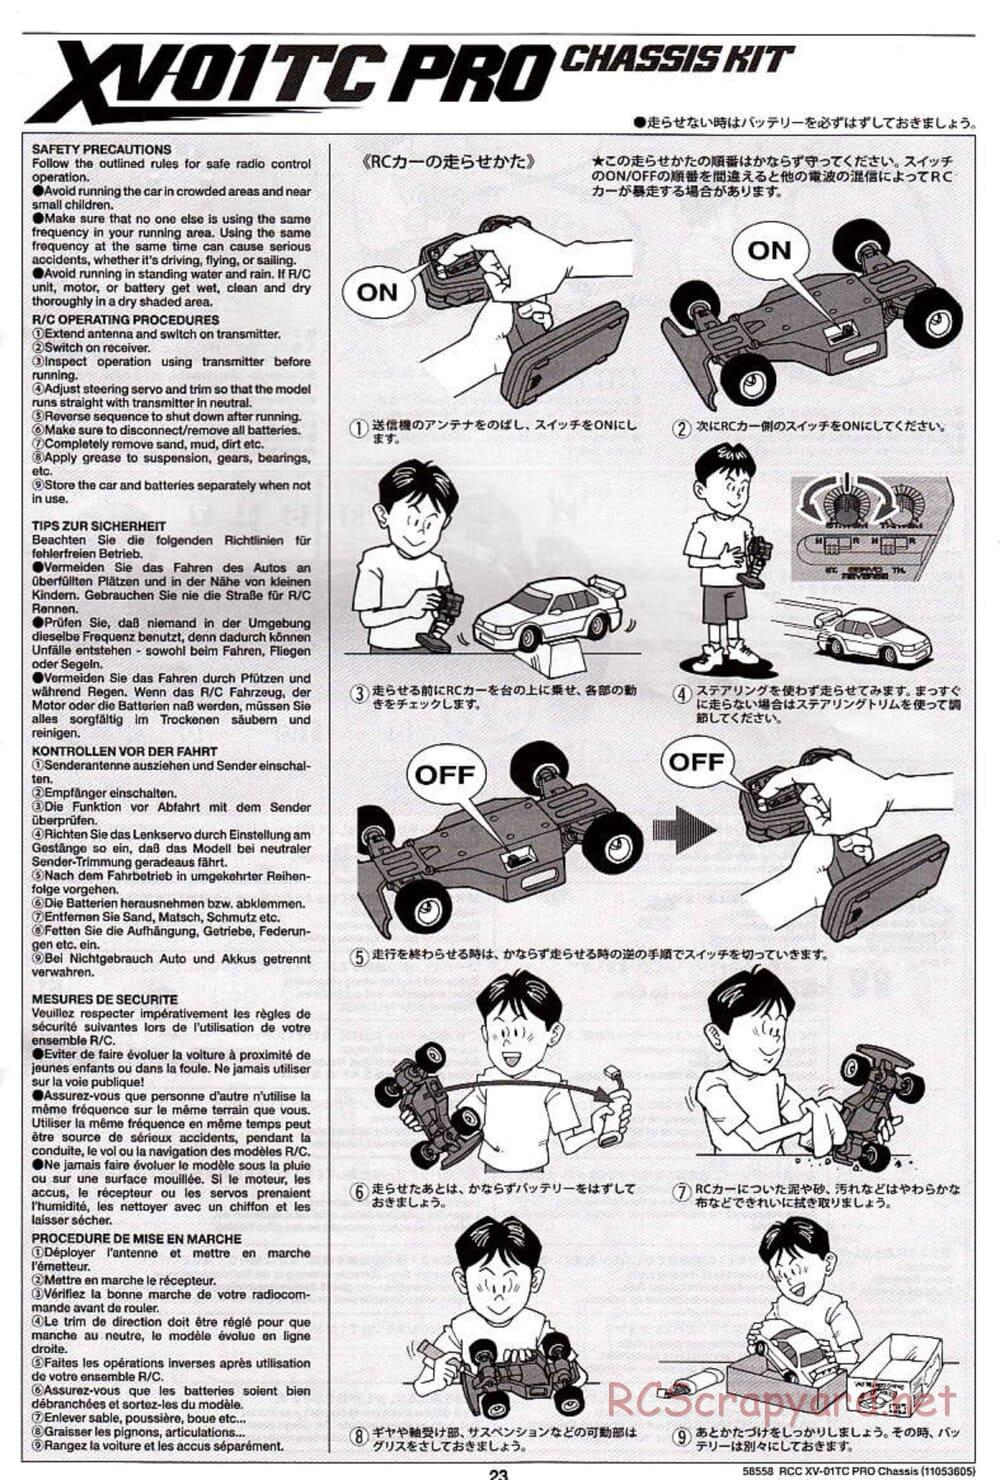 Tamiya - XV-01TC Chassis - Manual - Page 23